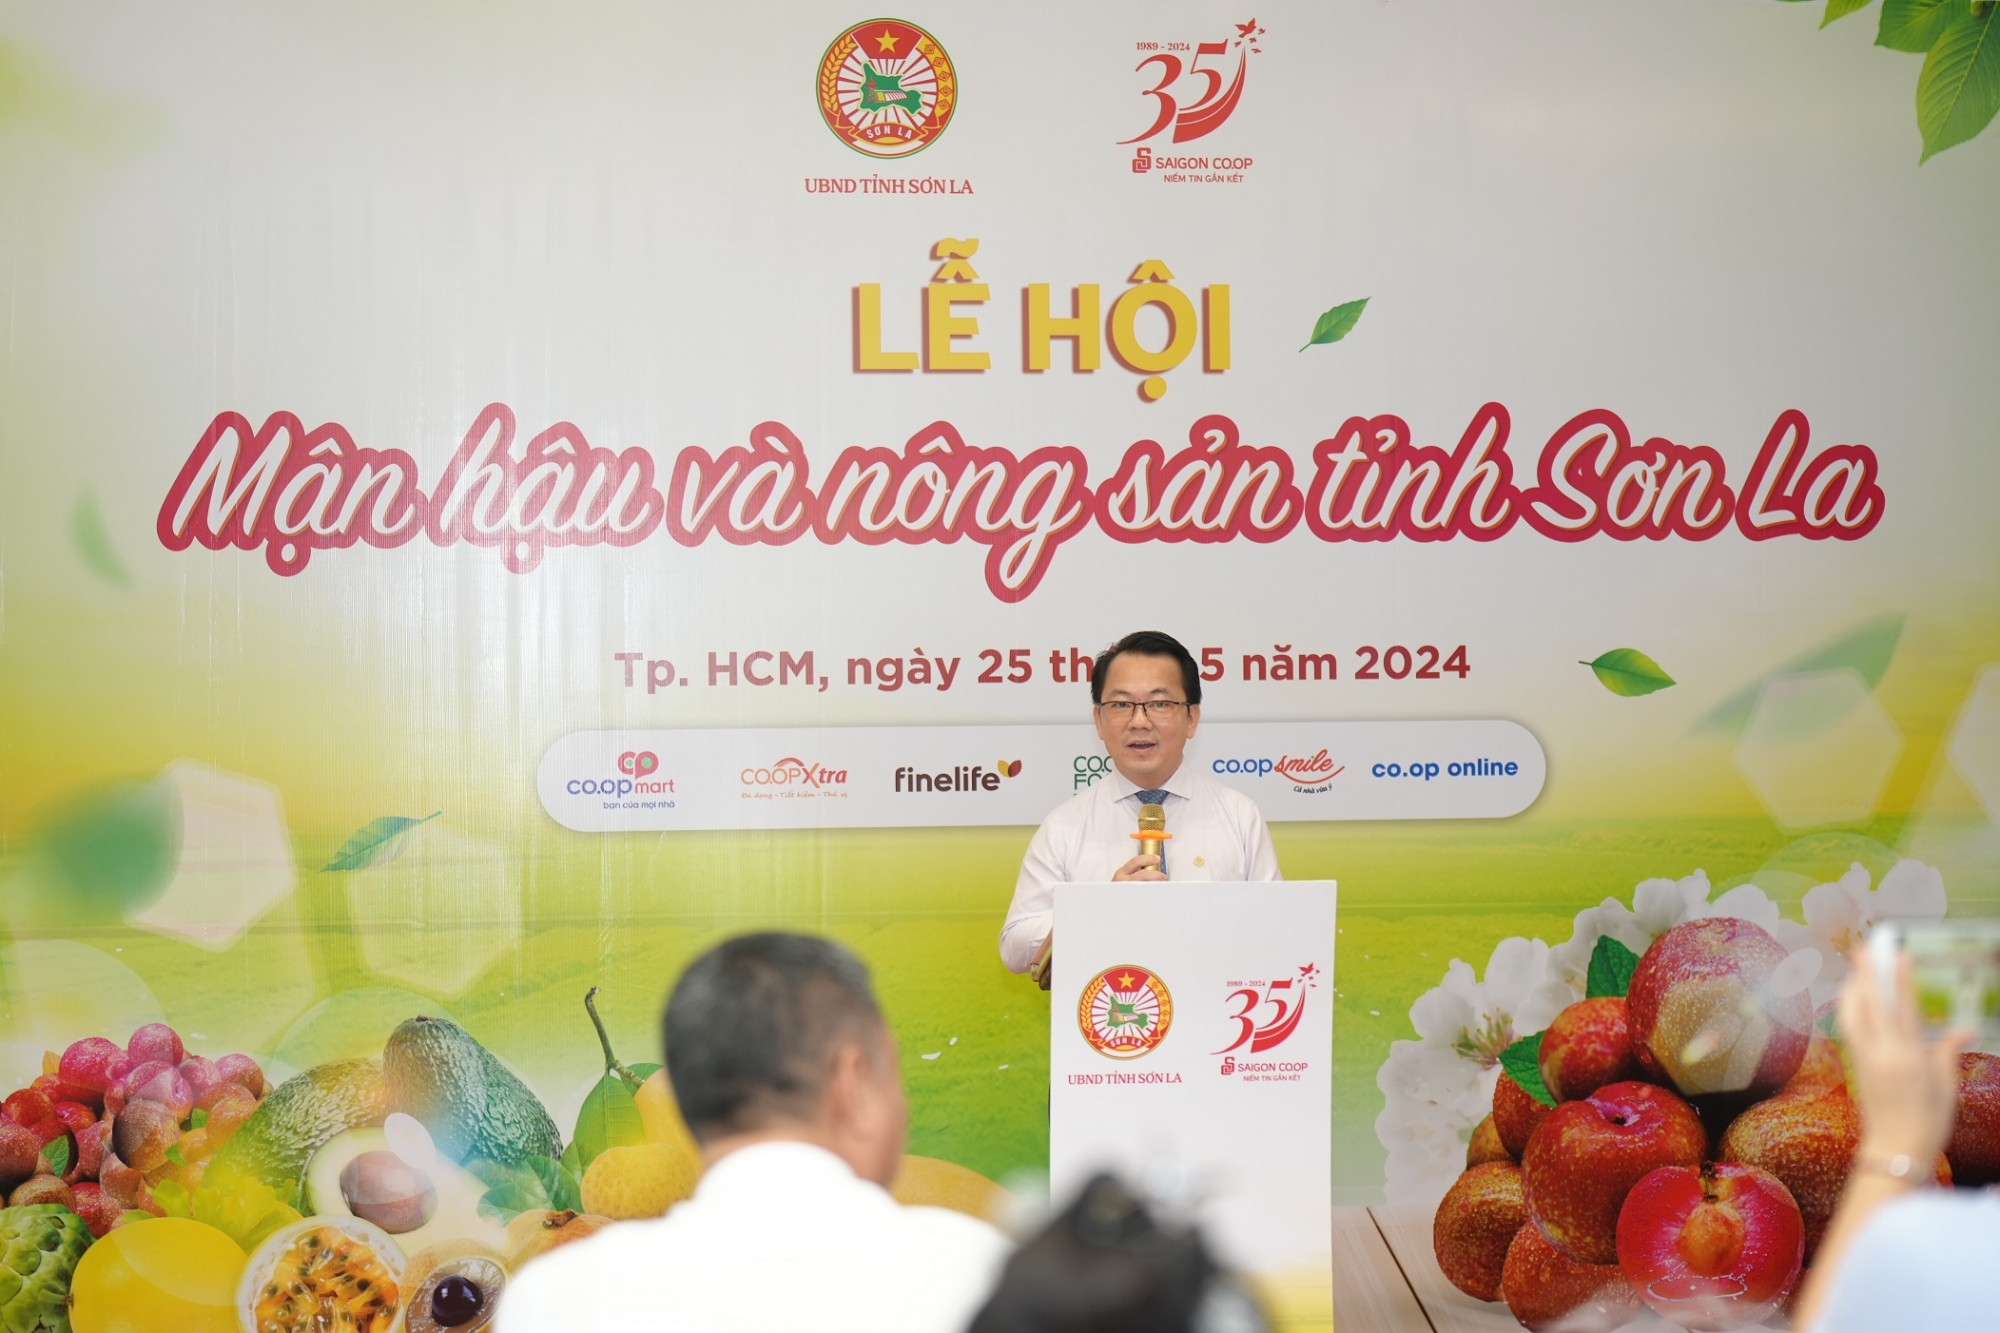 Ông Nguyễn Anh Đức - Tổng giám đốc Saigon Co.op - chia sẻ về những hoạt động ủng hộ nông sản Việt - Ảnh: Saigon Co.op